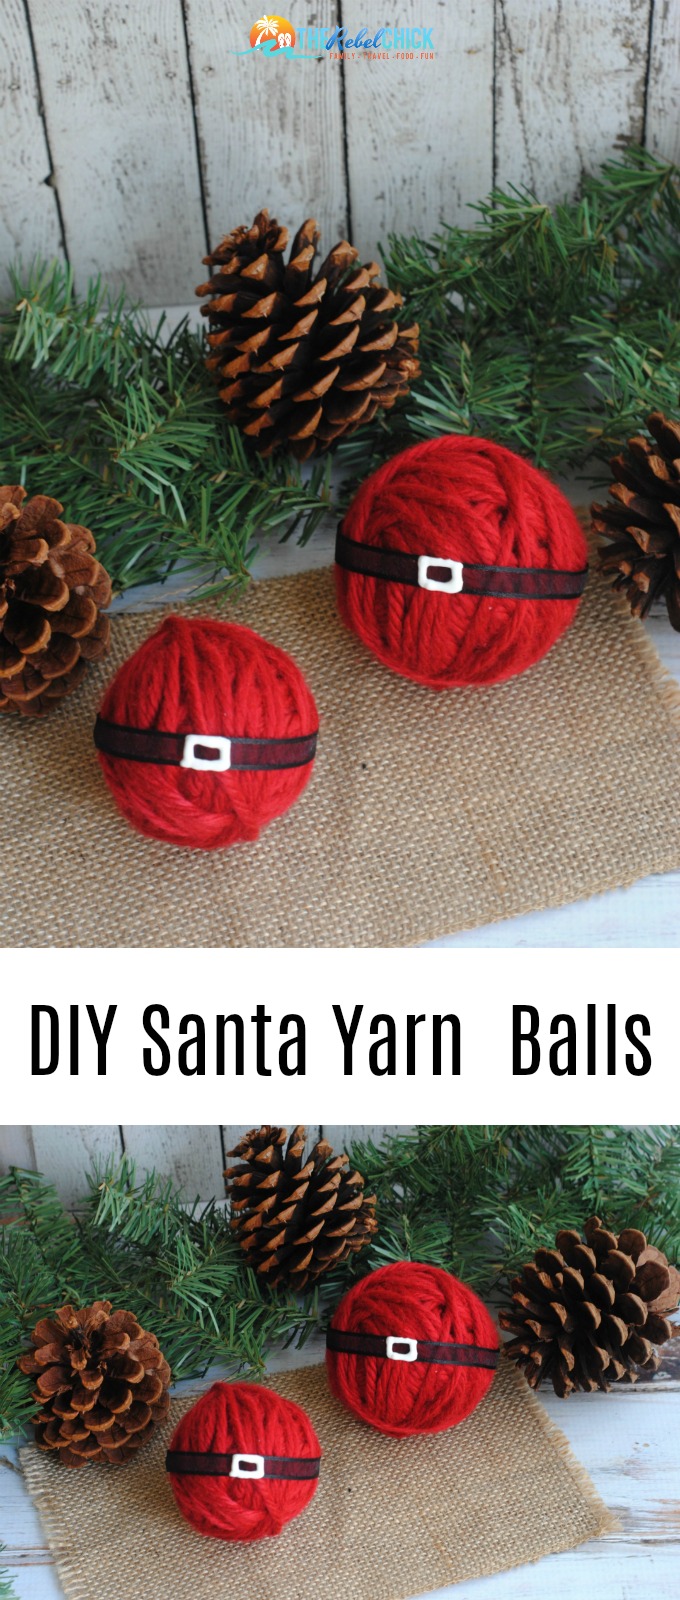 DIY Santa Yarn Balls